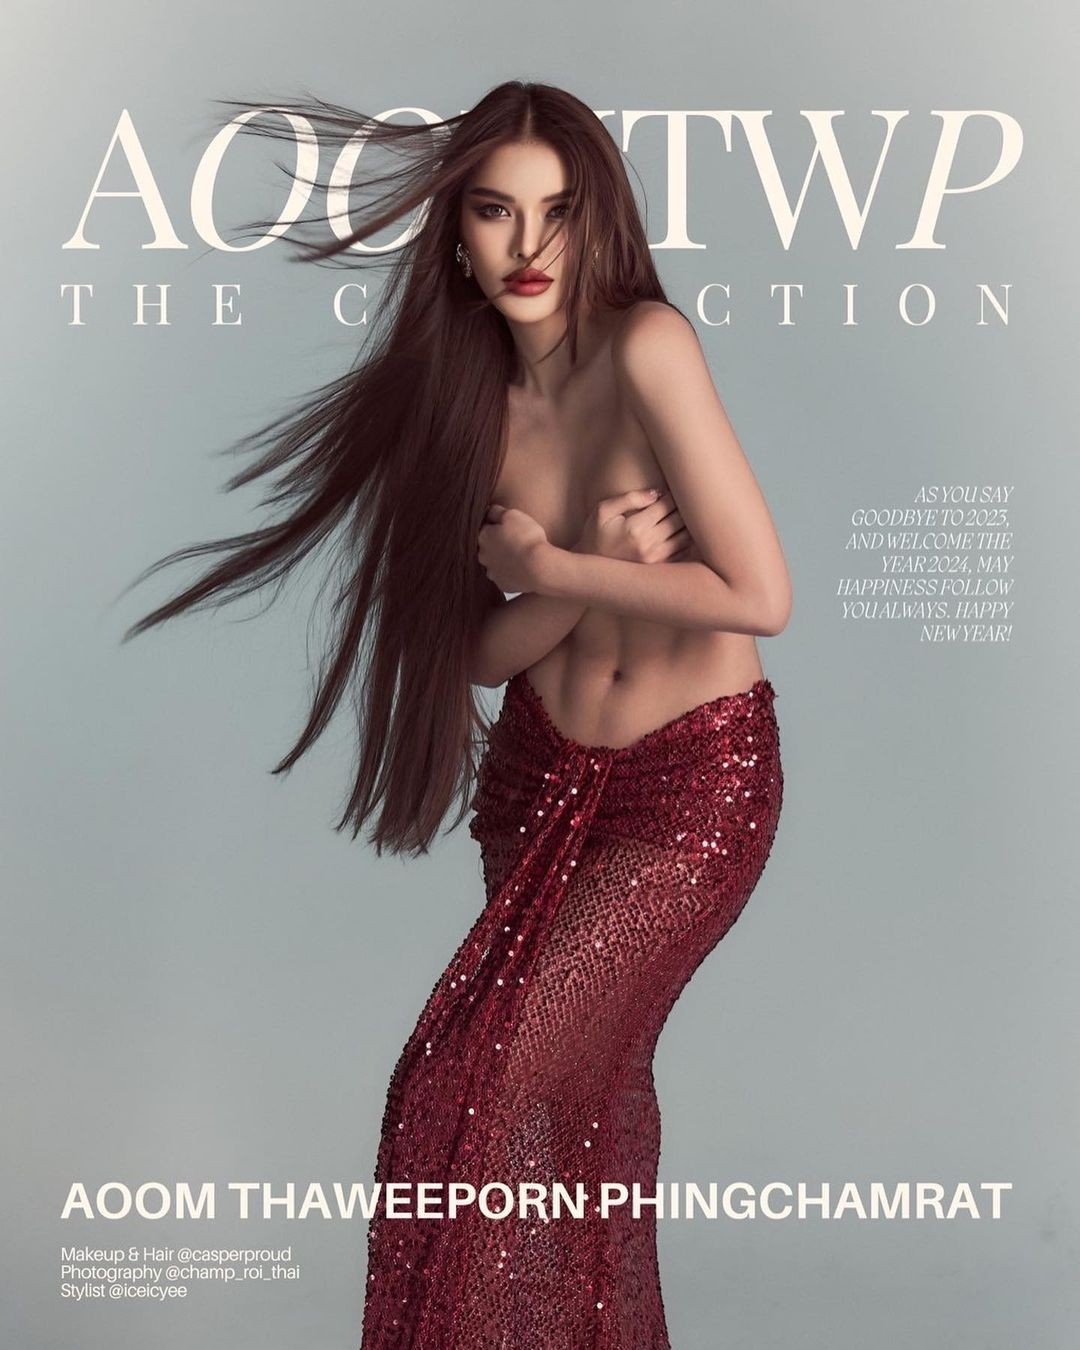 Hoa hậu Hòa bình Thái Lan gây tranh cãi vì chụp ảnh bán khỏa thân - Ảnh 1.